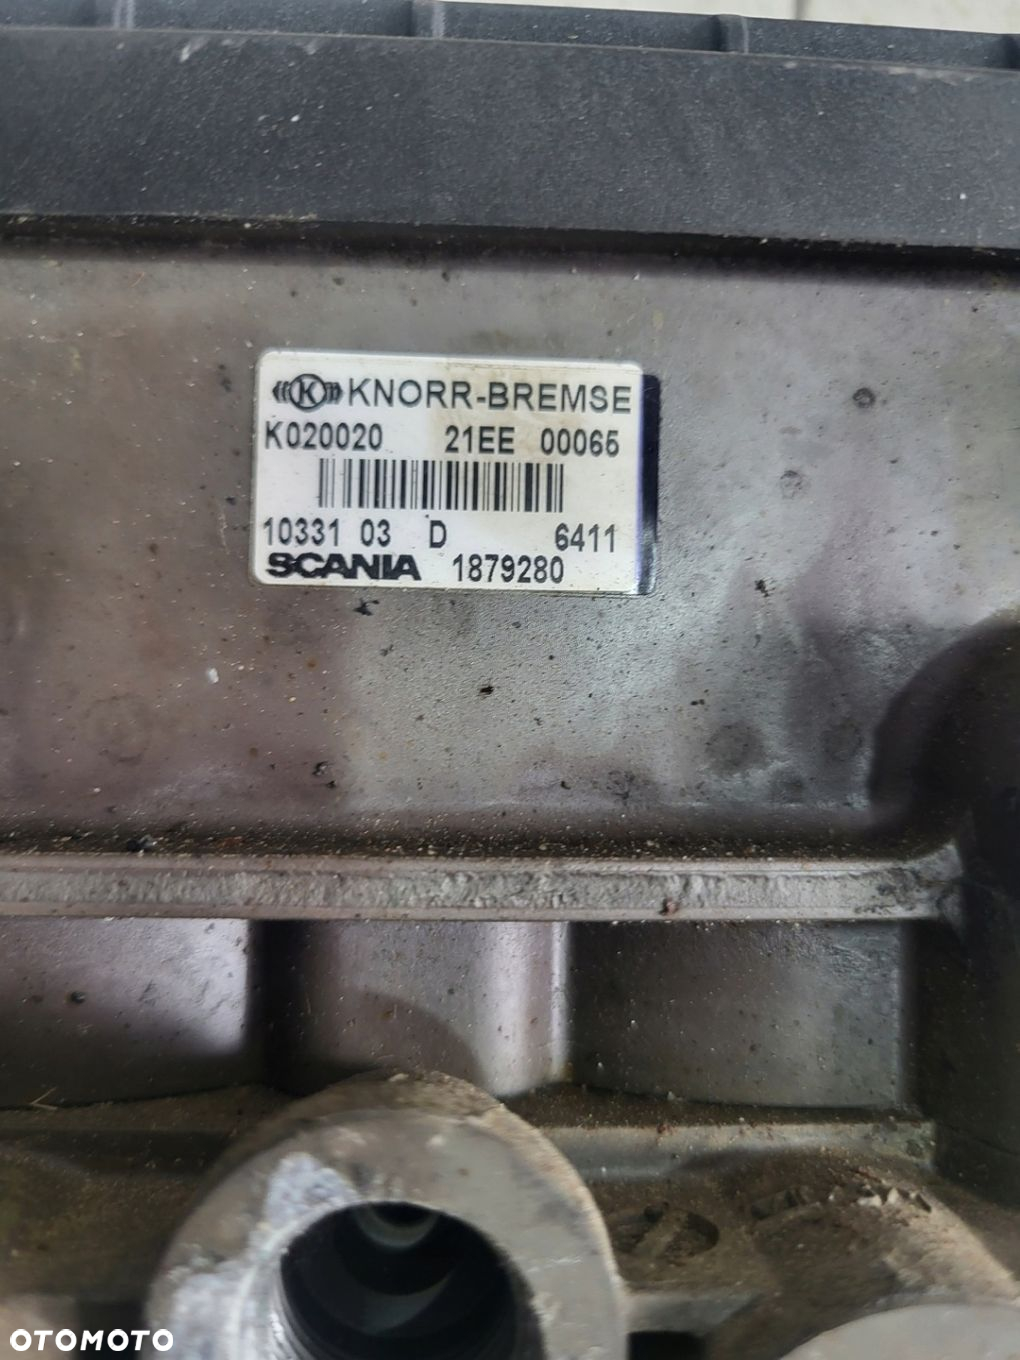 Zawór Modulator EBS Dwukanałowy Zawór Hamulcowy Scania R 1879280 - 3